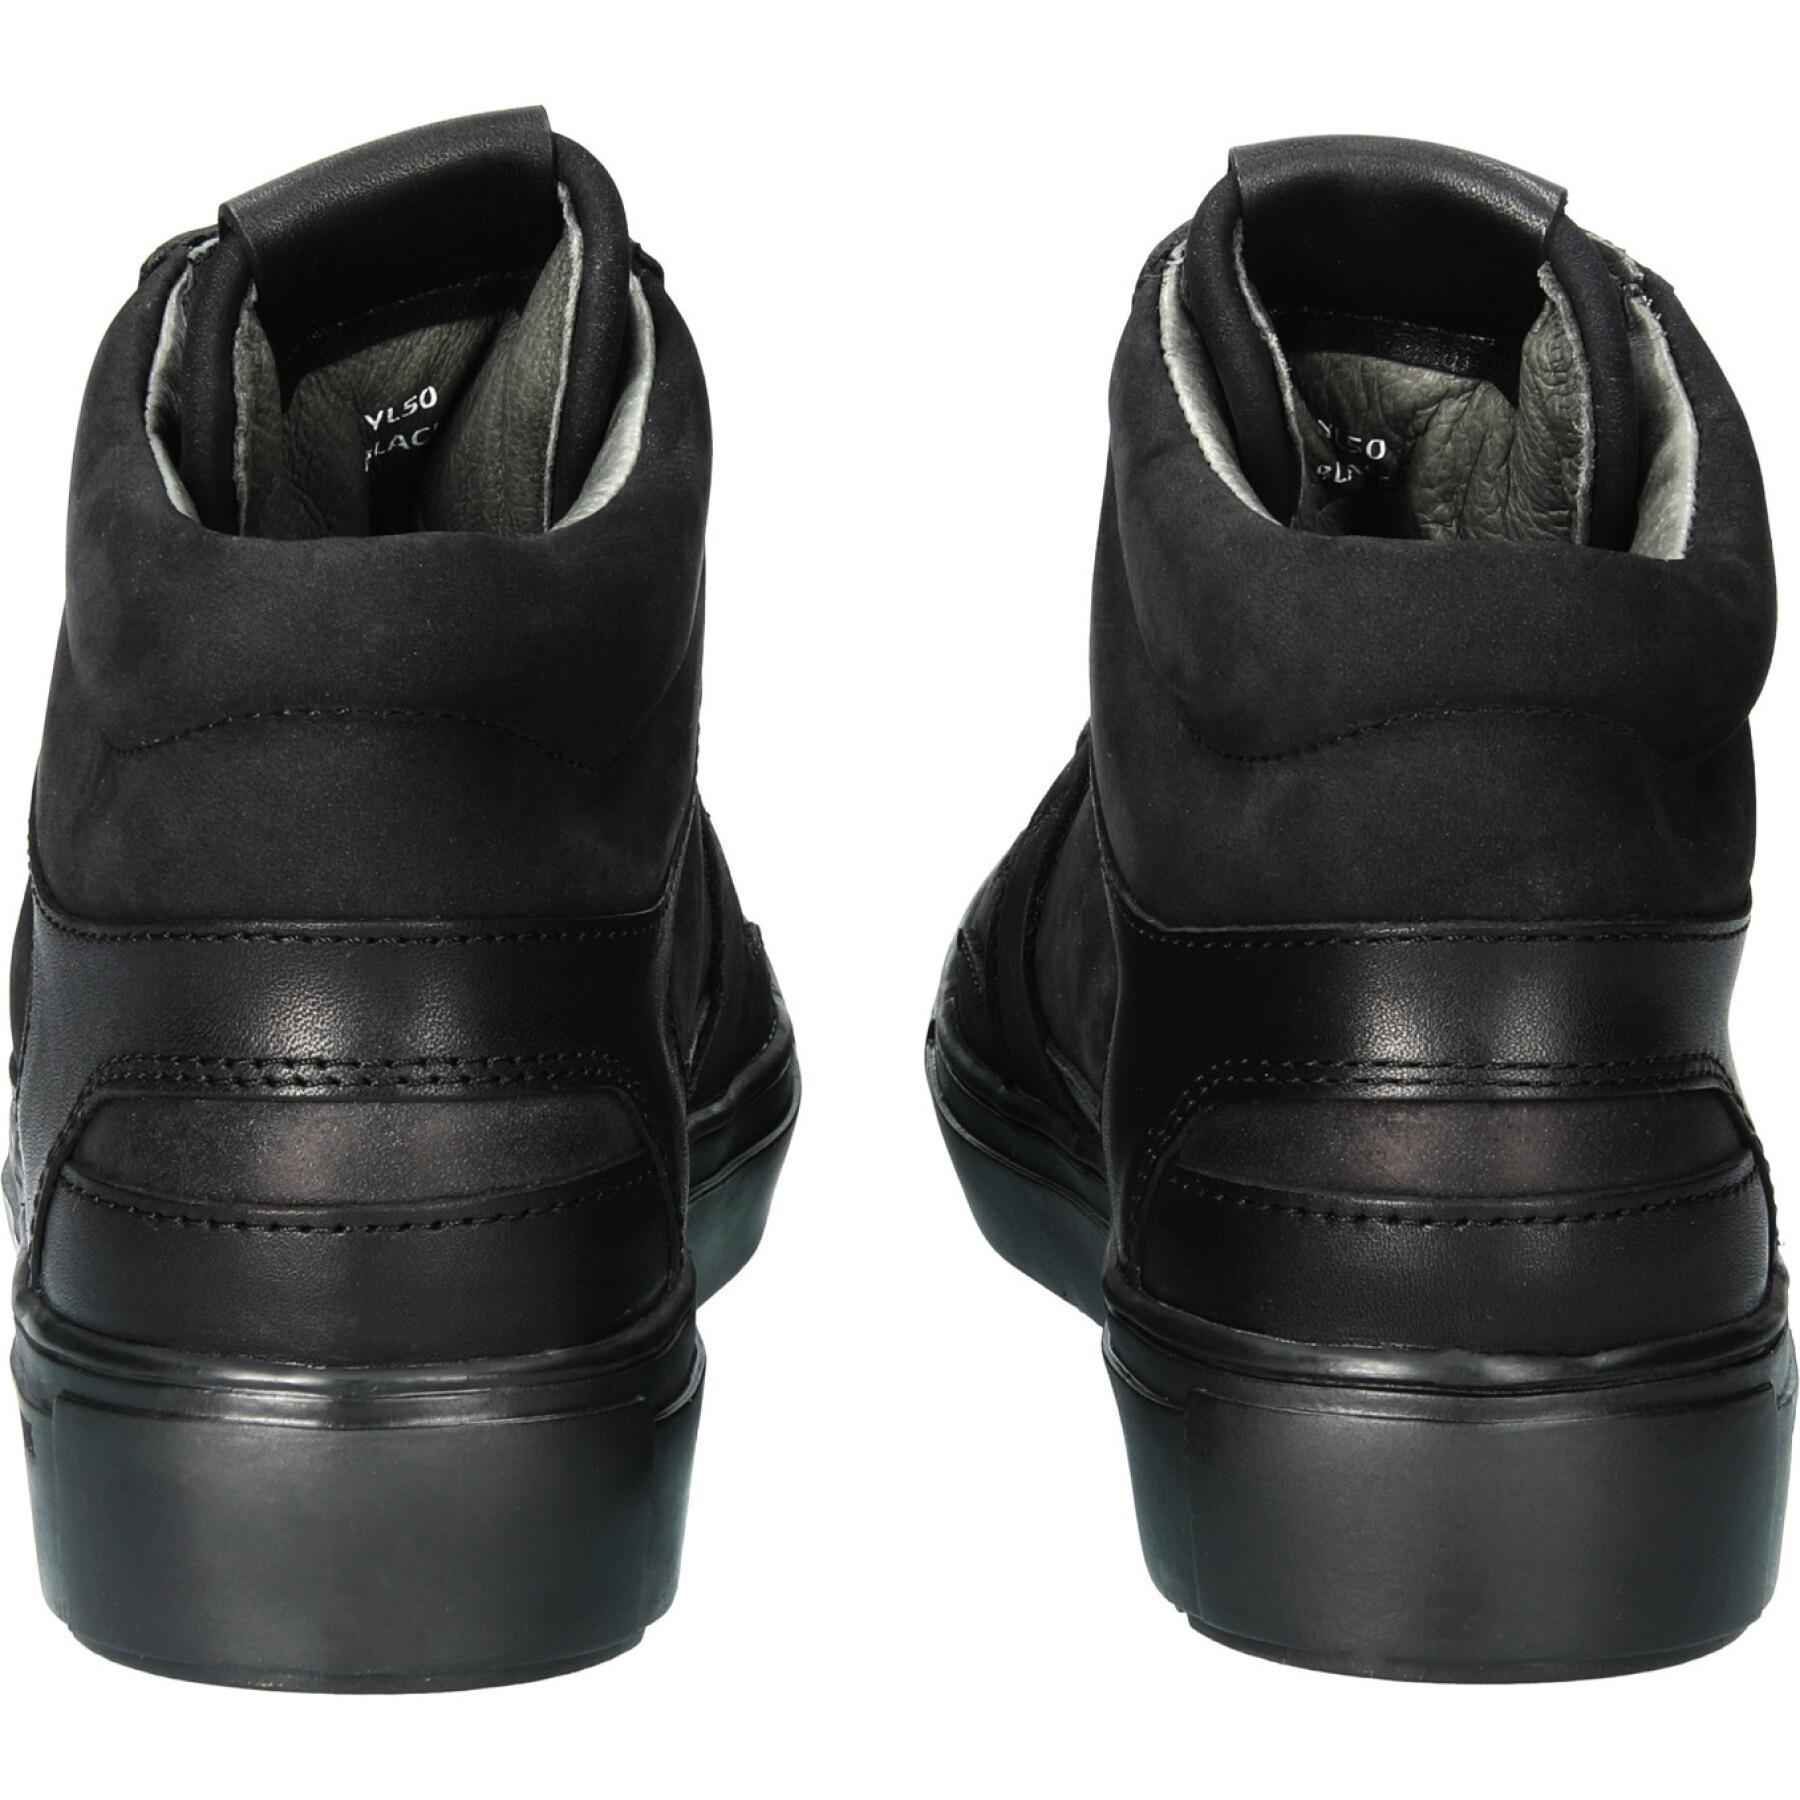 Högklackade sneakers för damer Blackstone Keyla - YL50